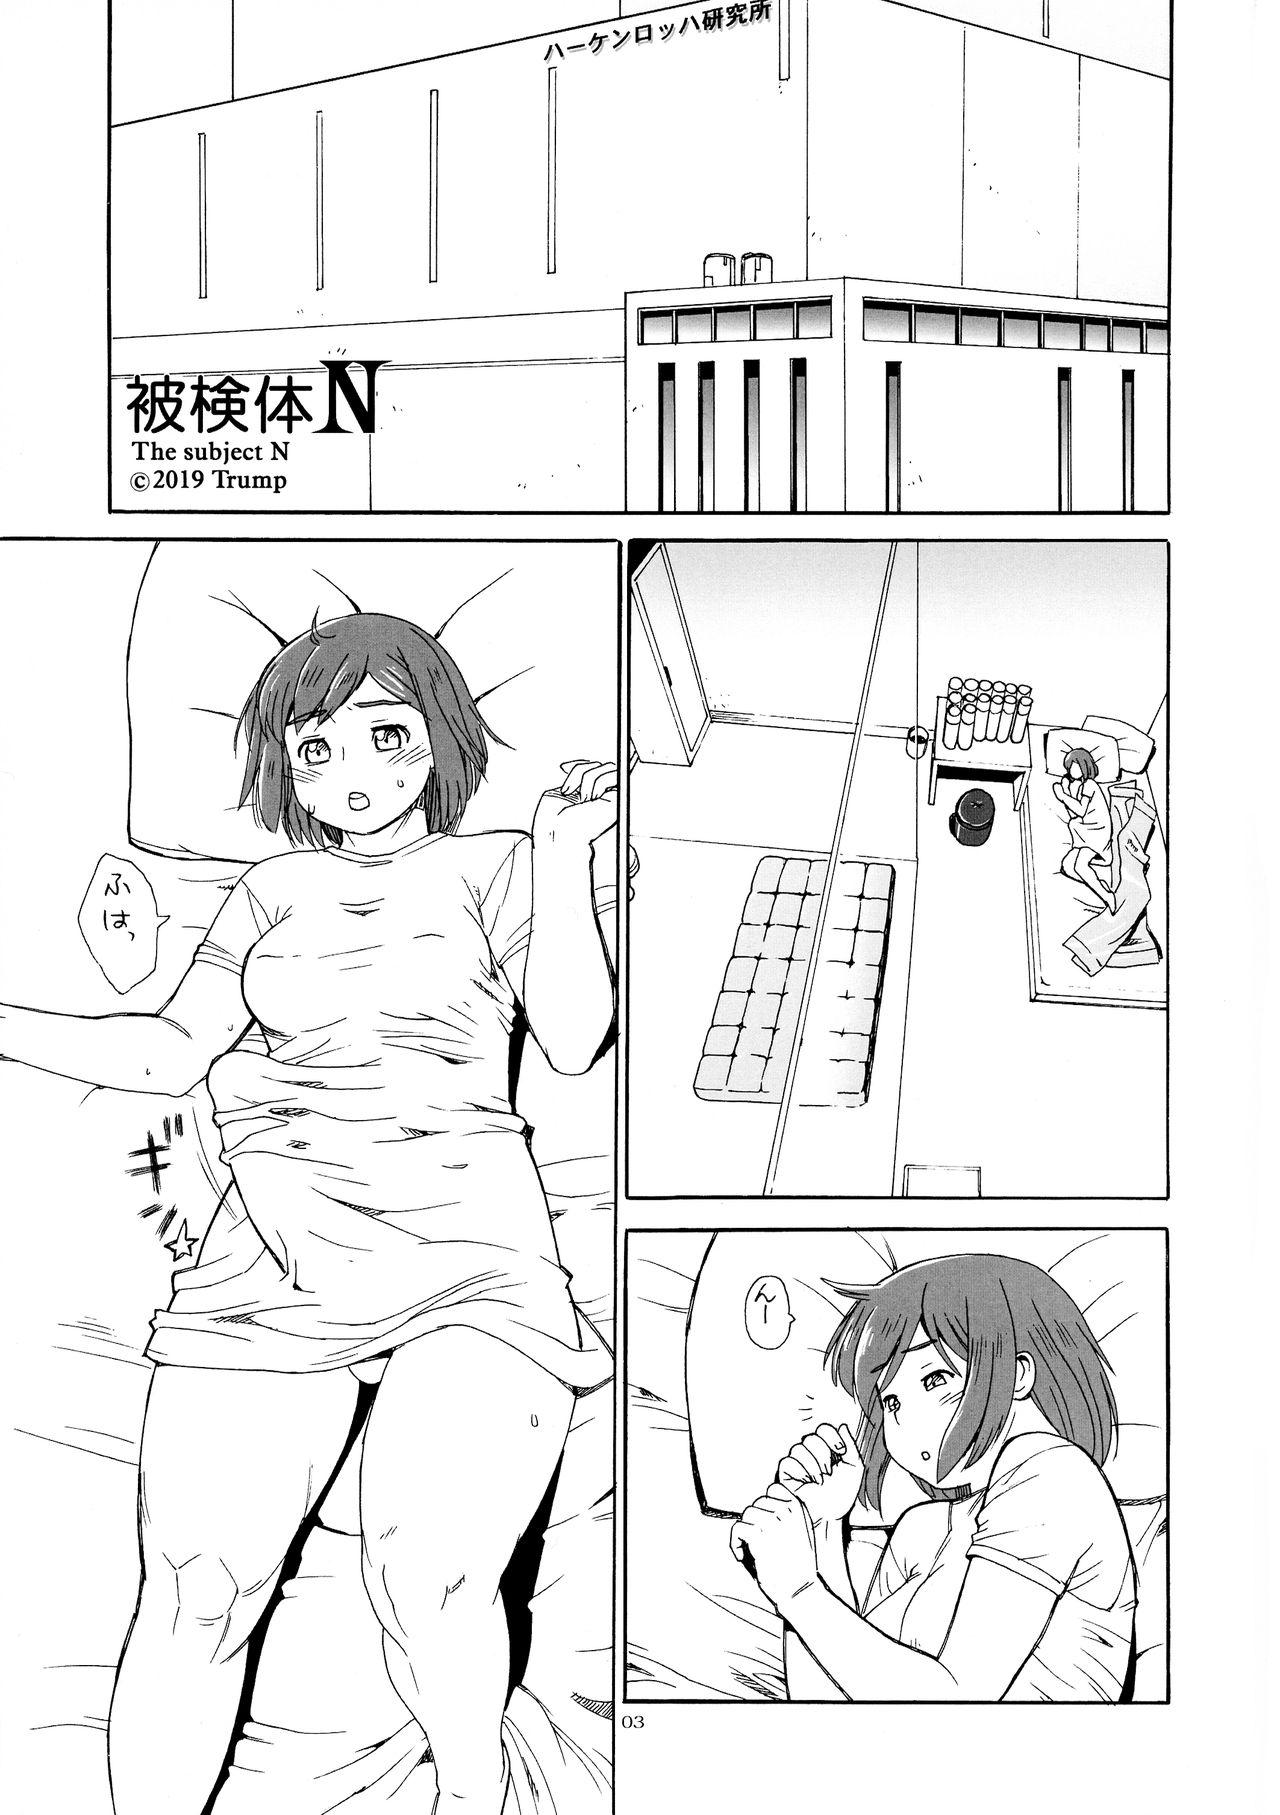 Novinhas Hiken-tai N - Original Perrito - Page 3